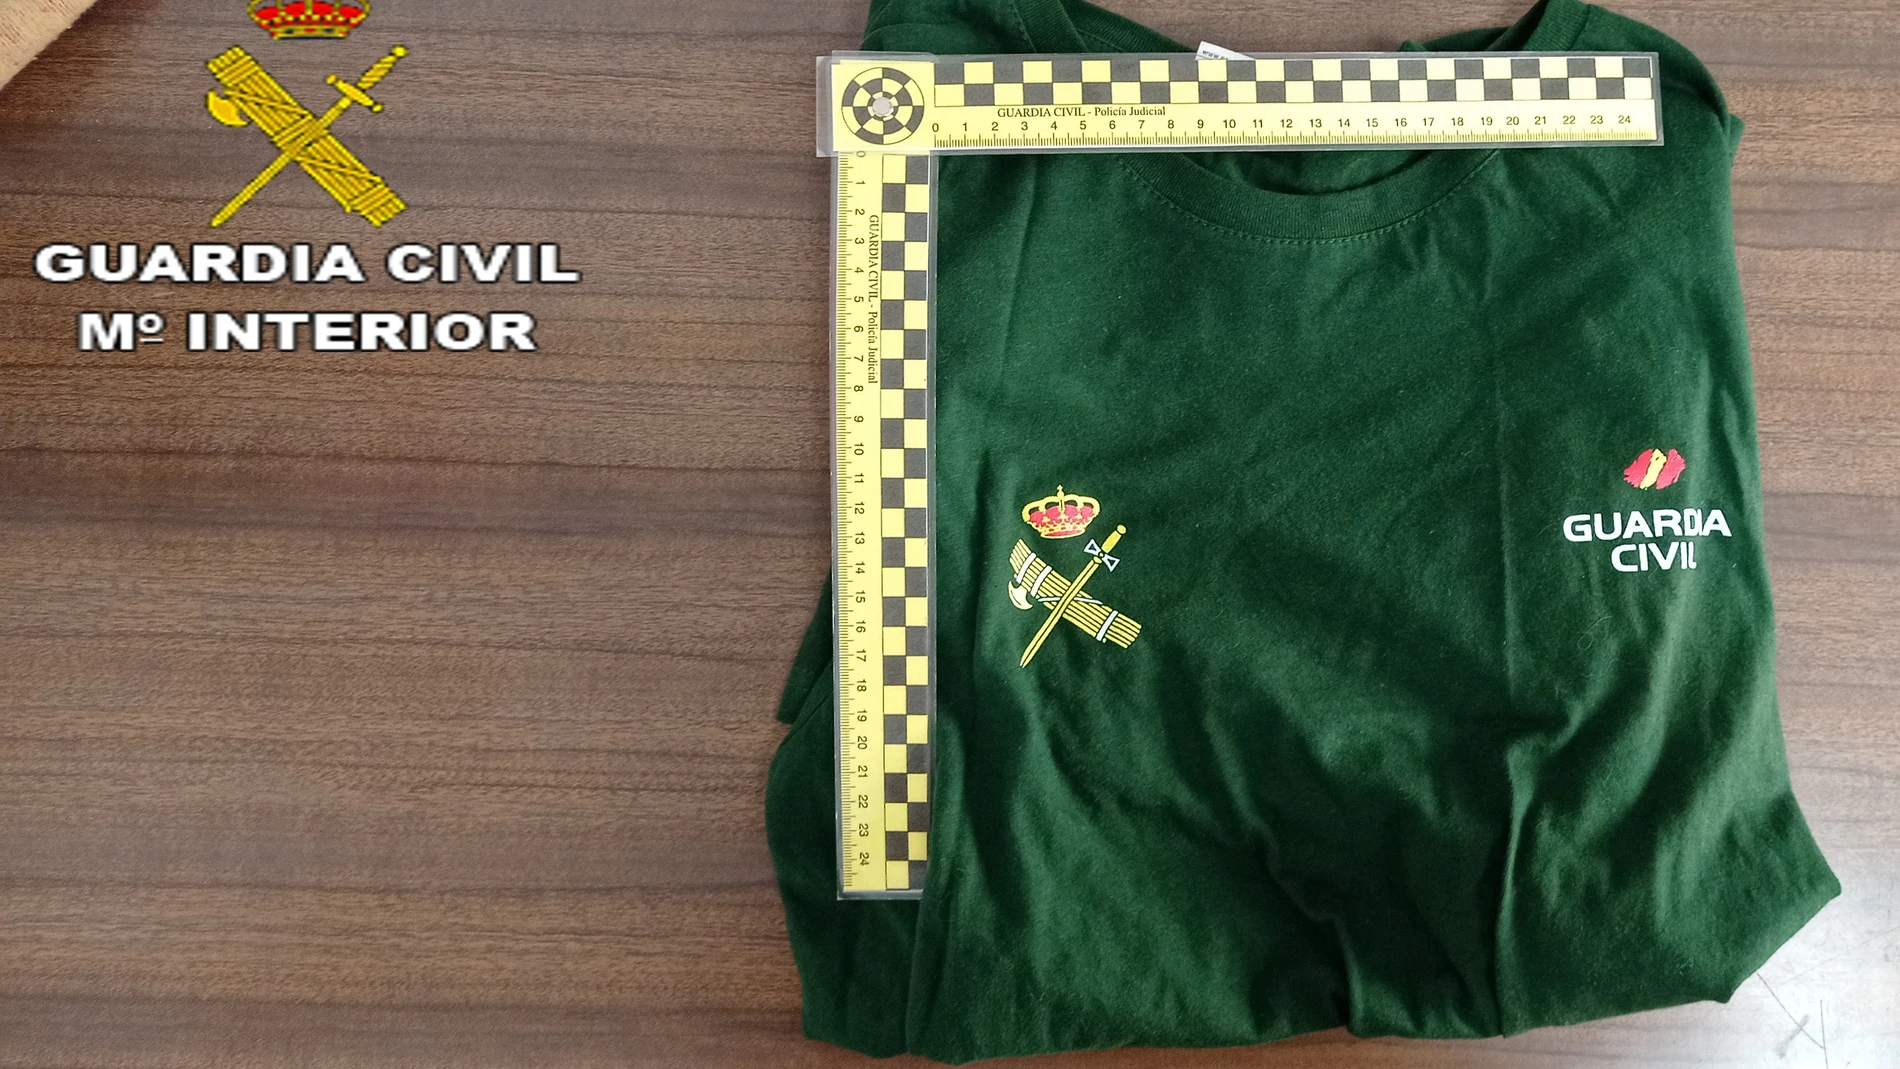 Camiseta utilizada por el estafador para hacerse pasar por Guardia Civil.